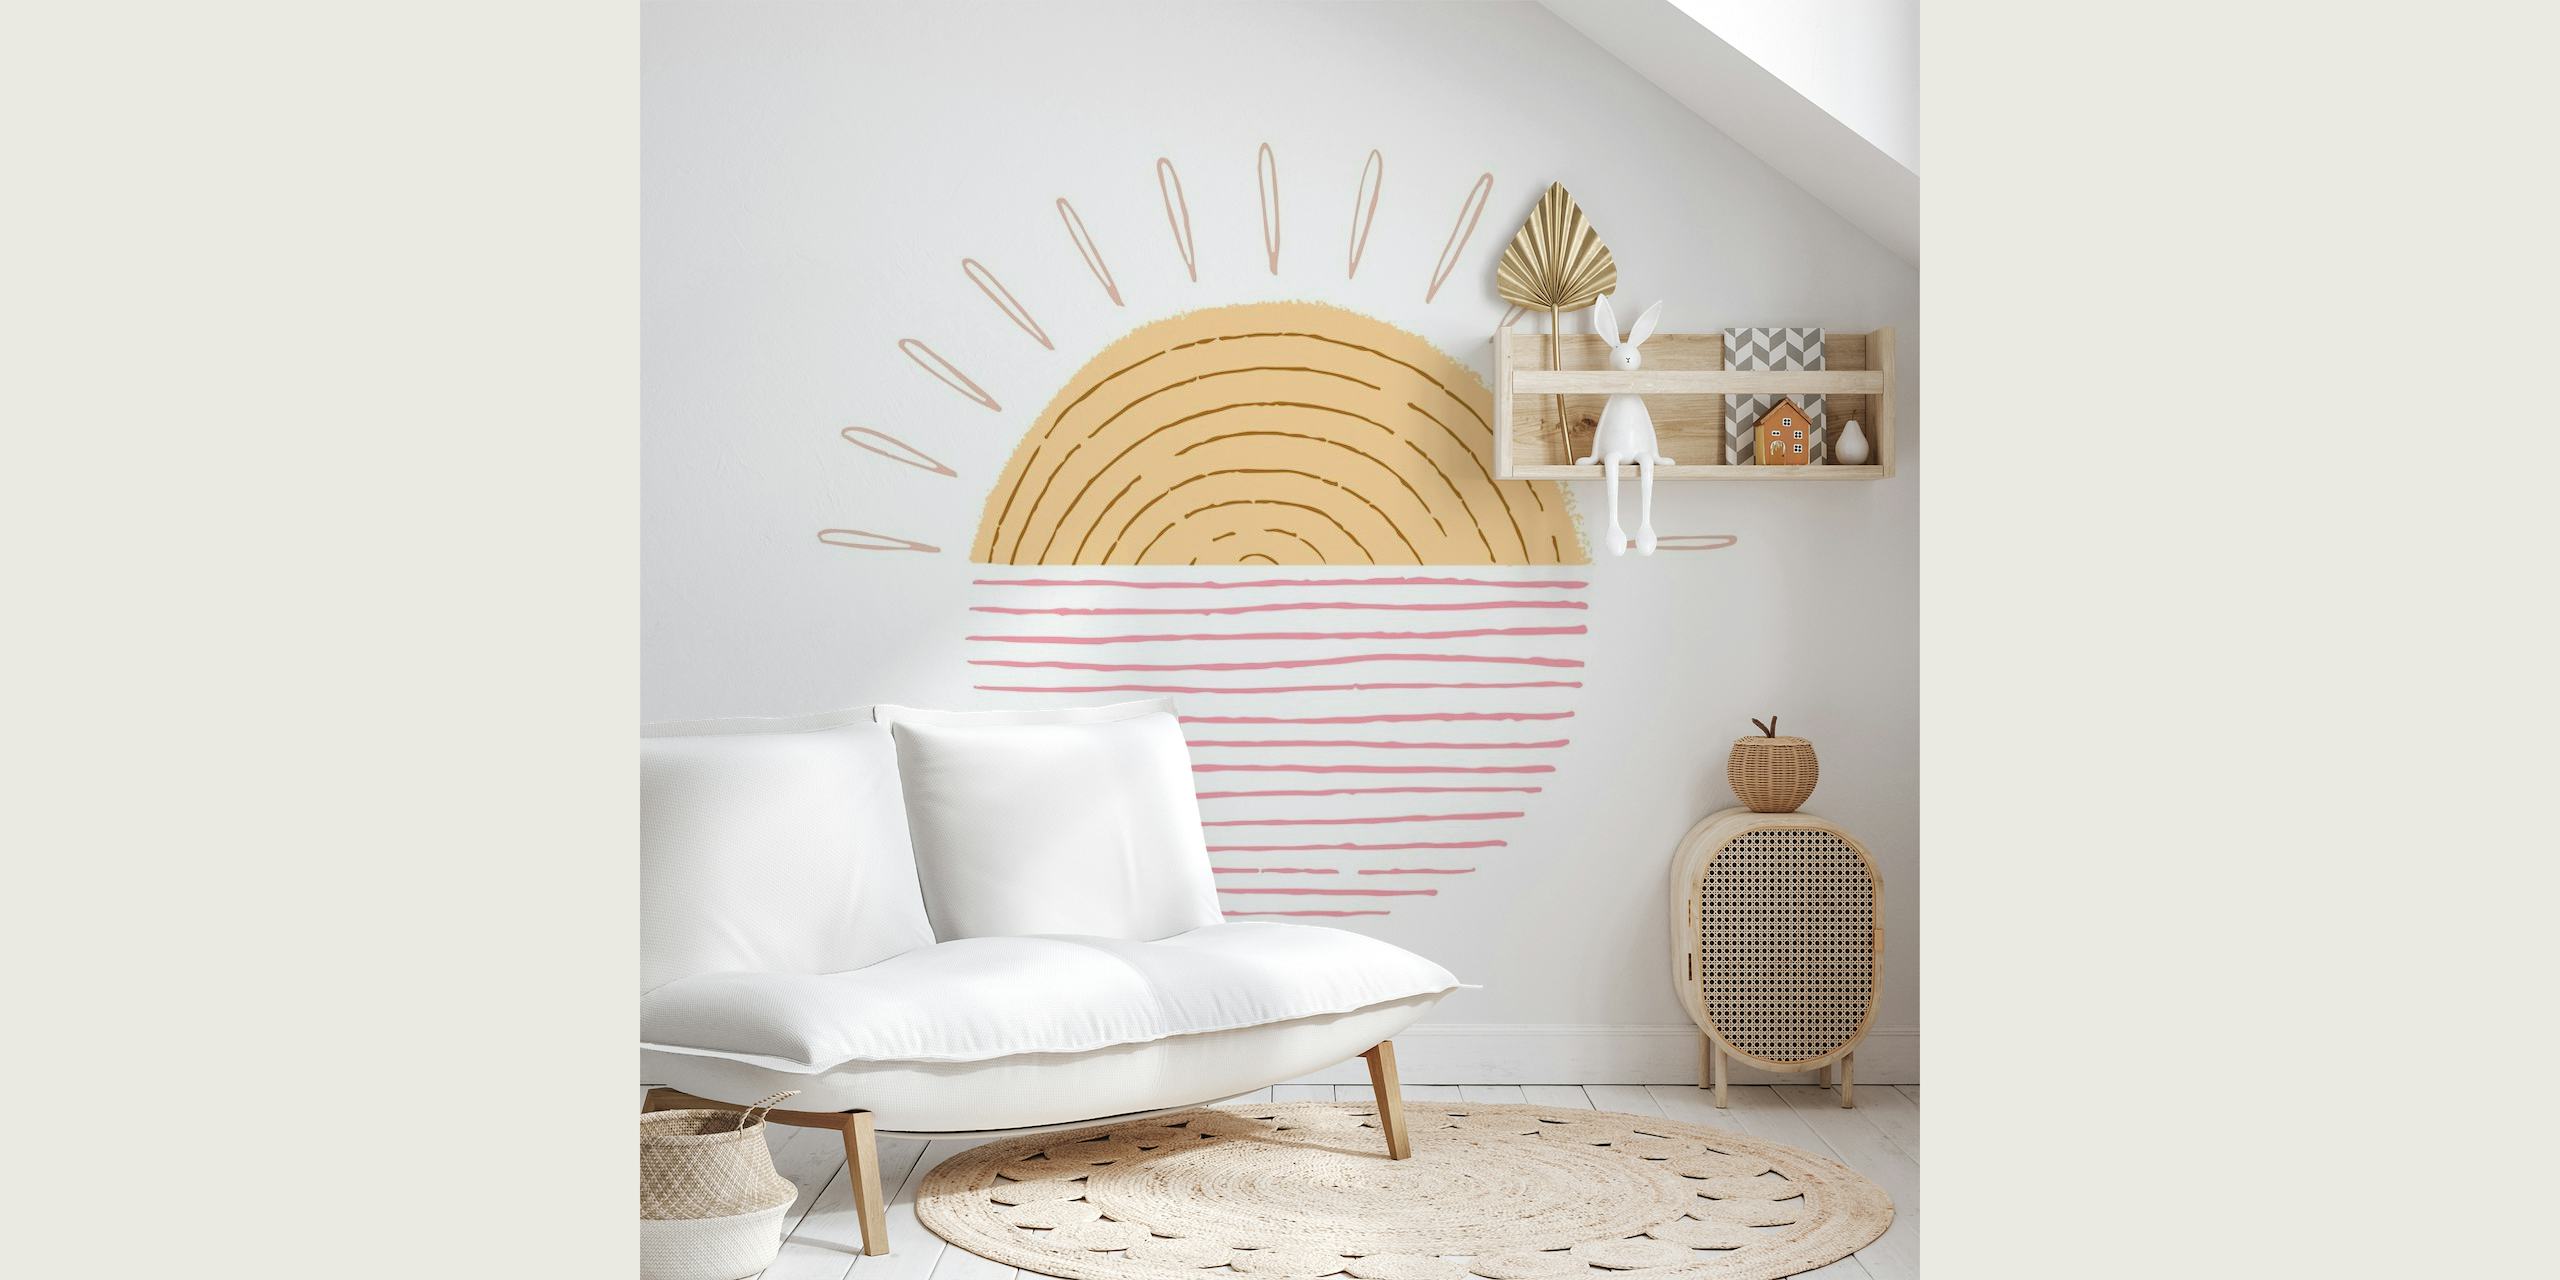 Ilustrativni mural Sweet Sunrise s toplim tonovima i minimalističkim dizajnom